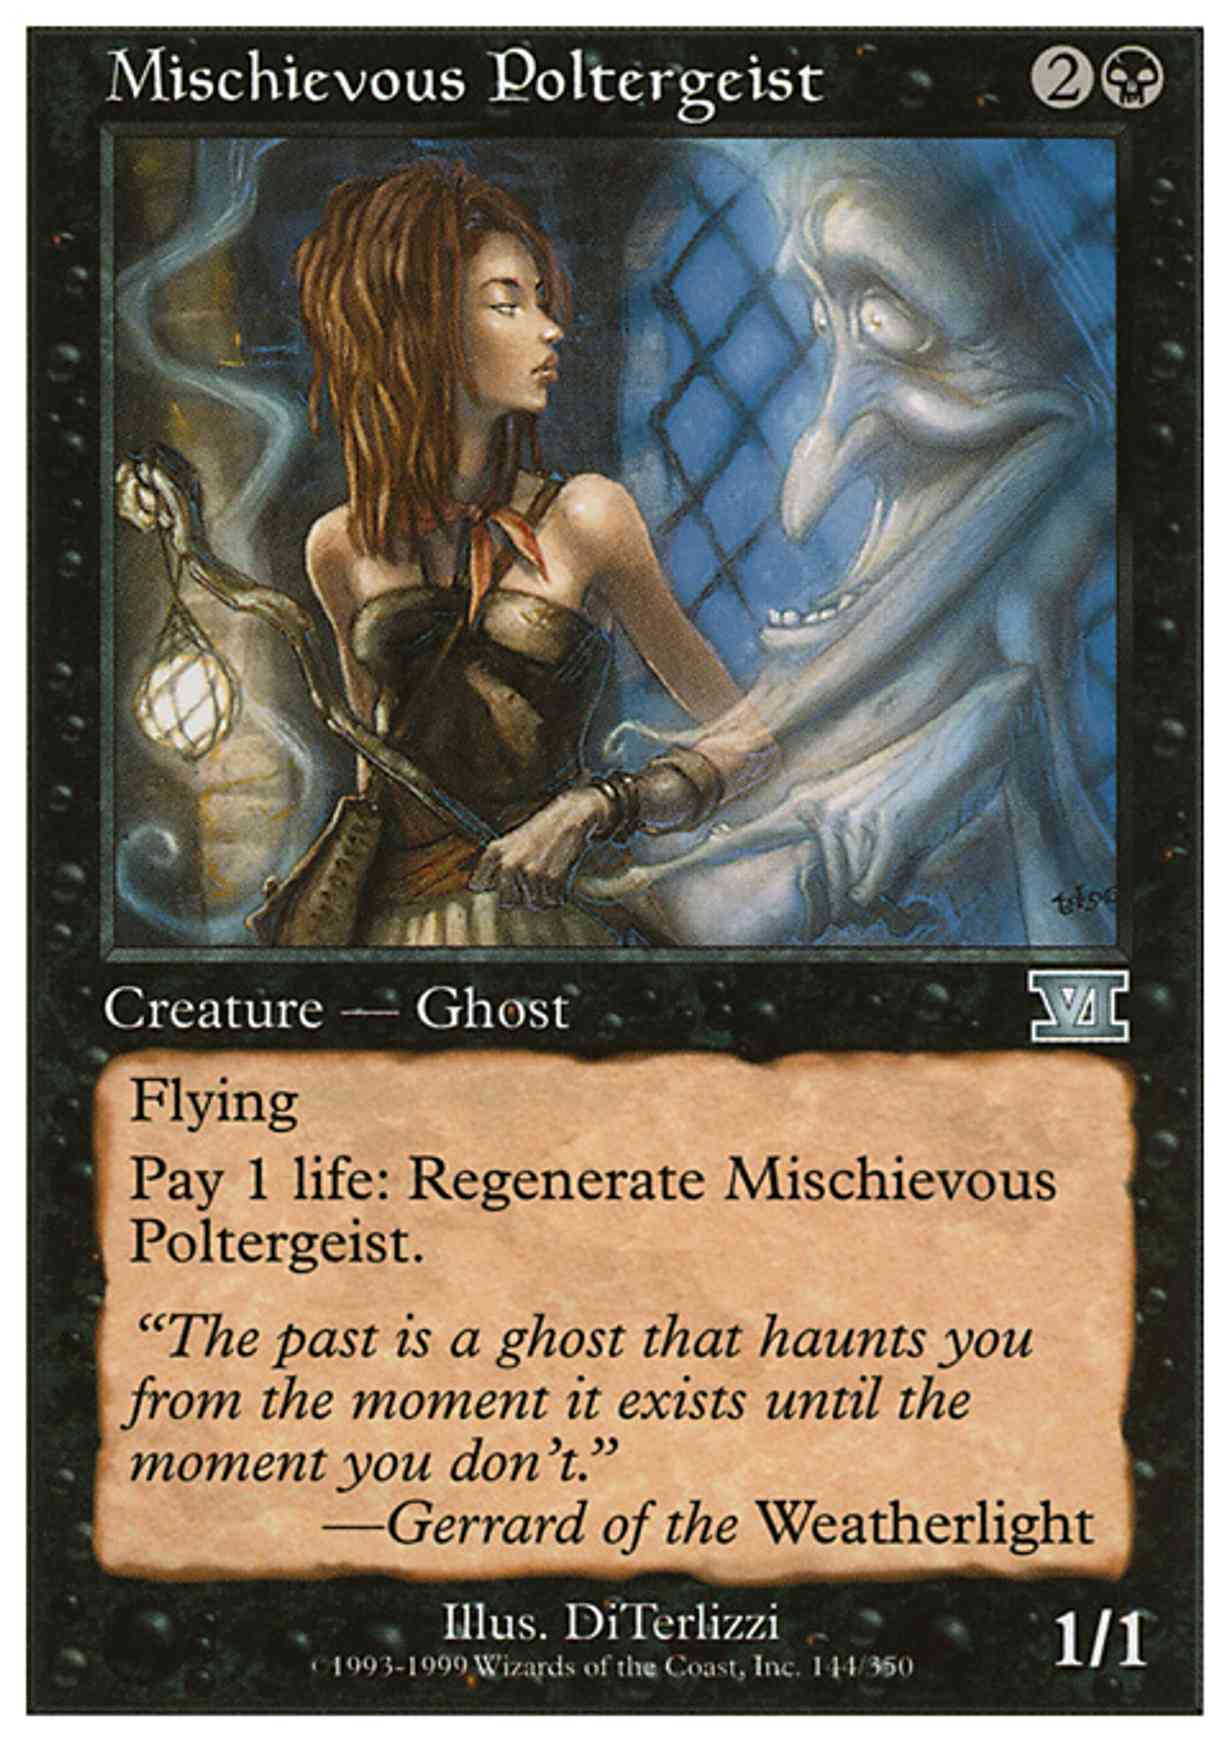 Mischievous Poltergeist magic card front